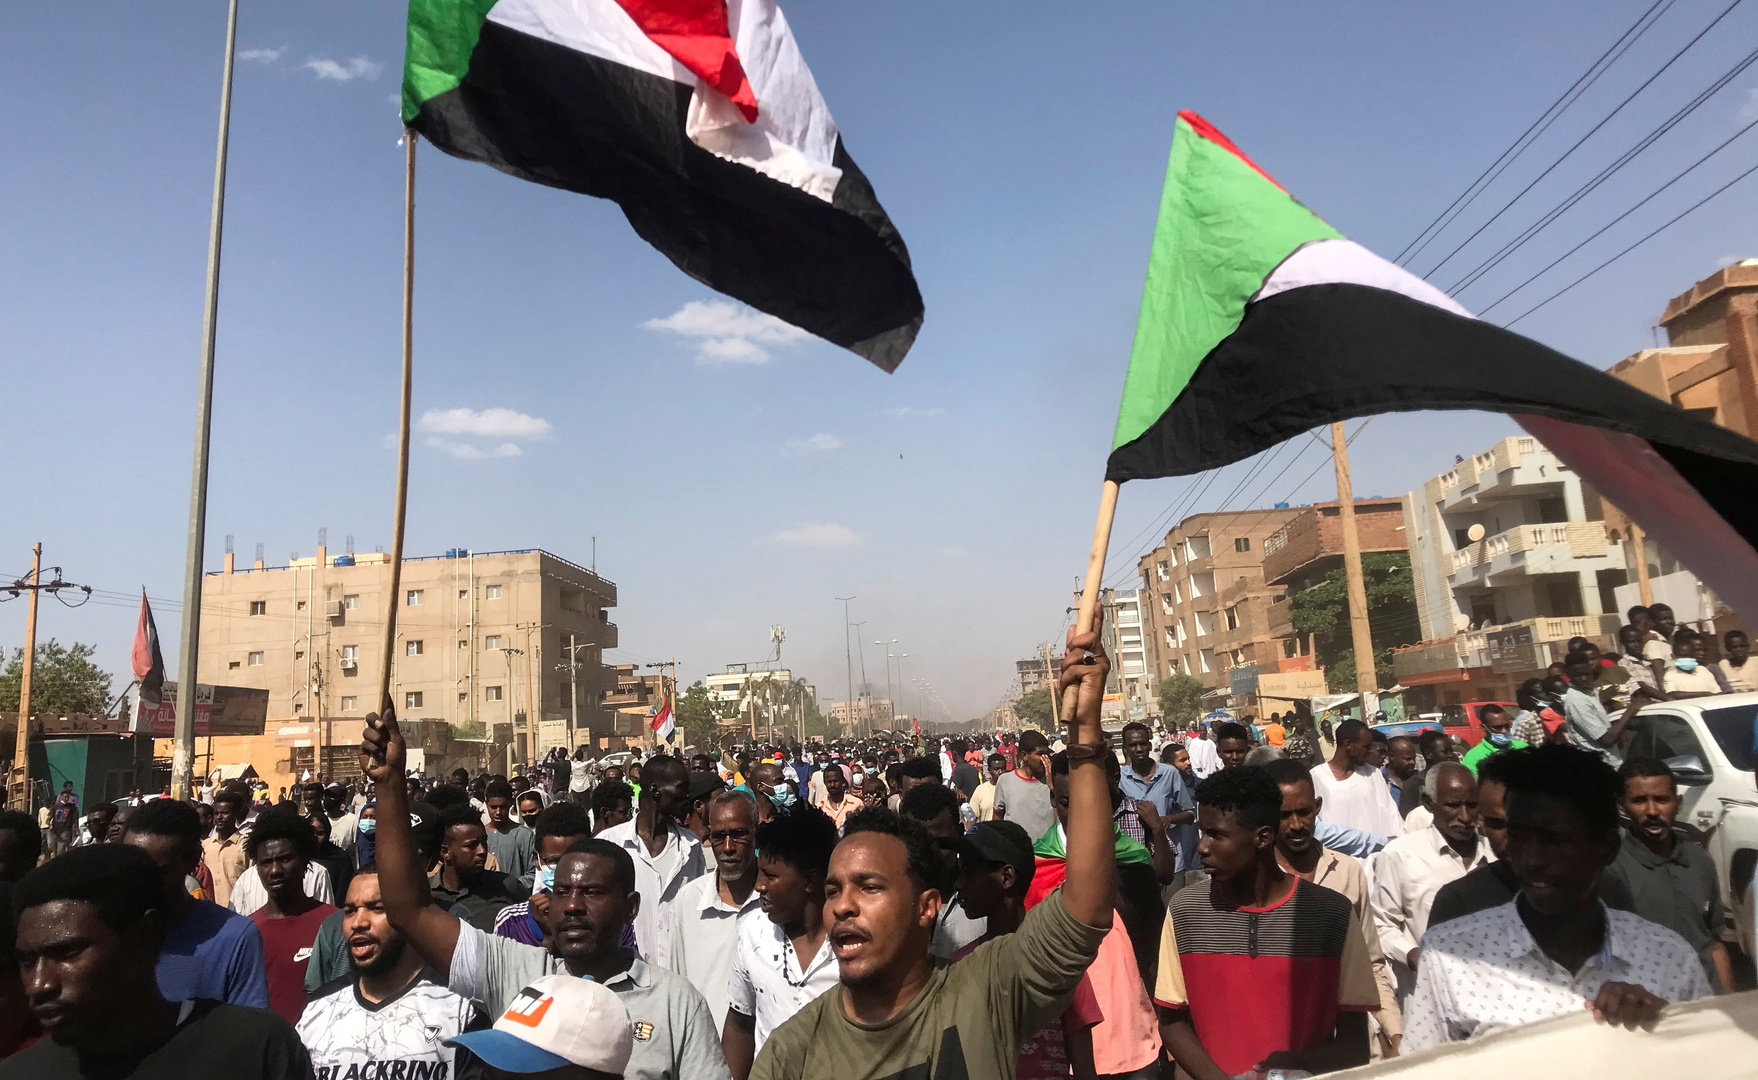 السودان.. استخدام الغاز المسيل للدموع ضد المتظاهرين والسلطات تقطع الاتصالات الهاتفية